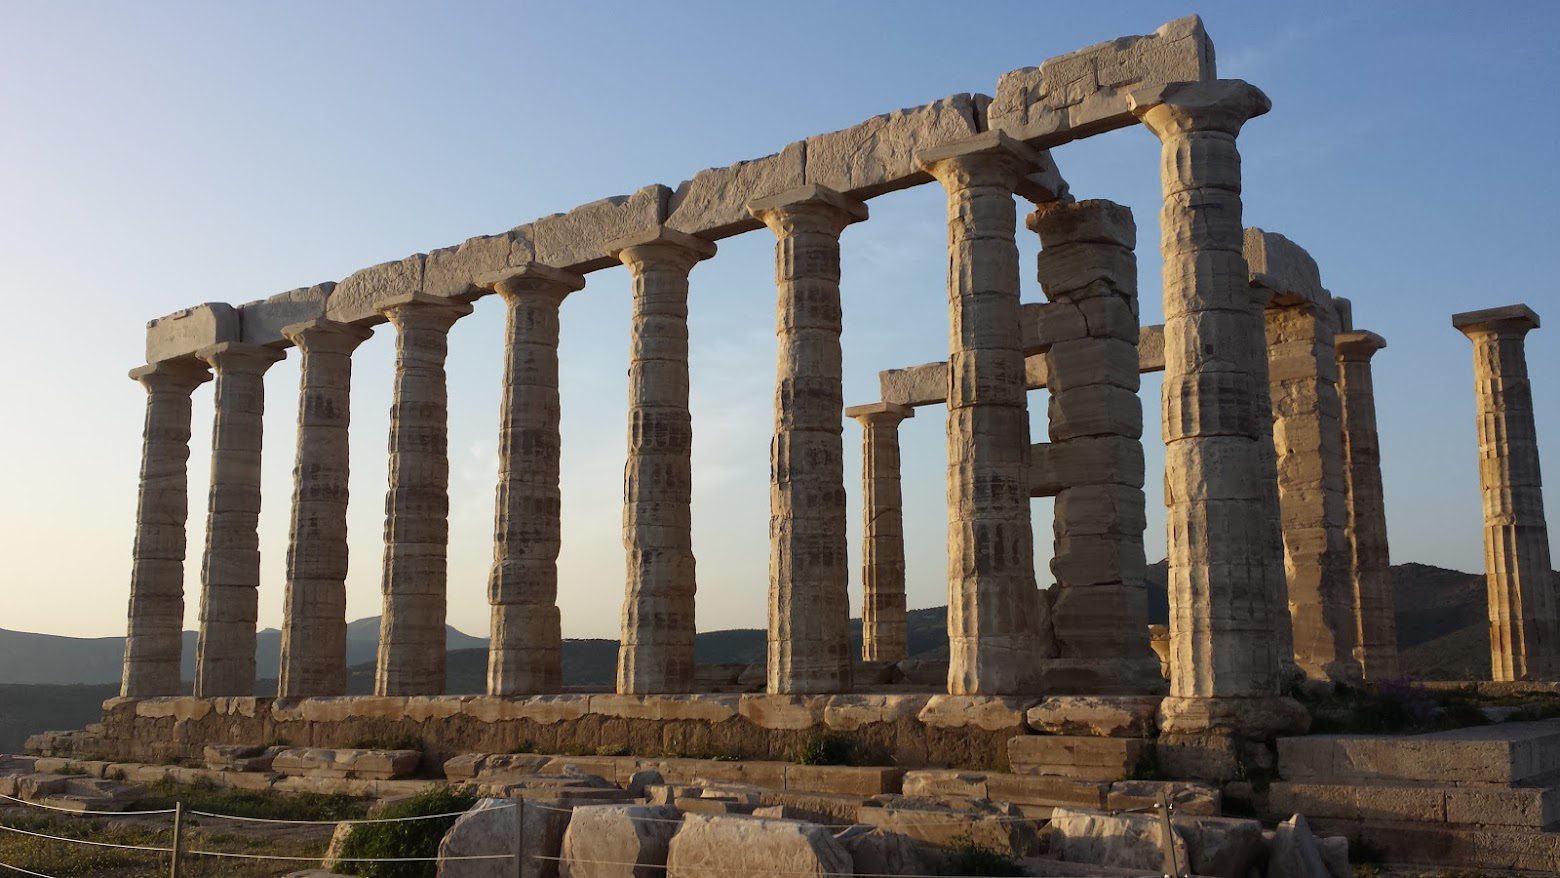 Photo of the Temple of Poseidon takien in Greece in March